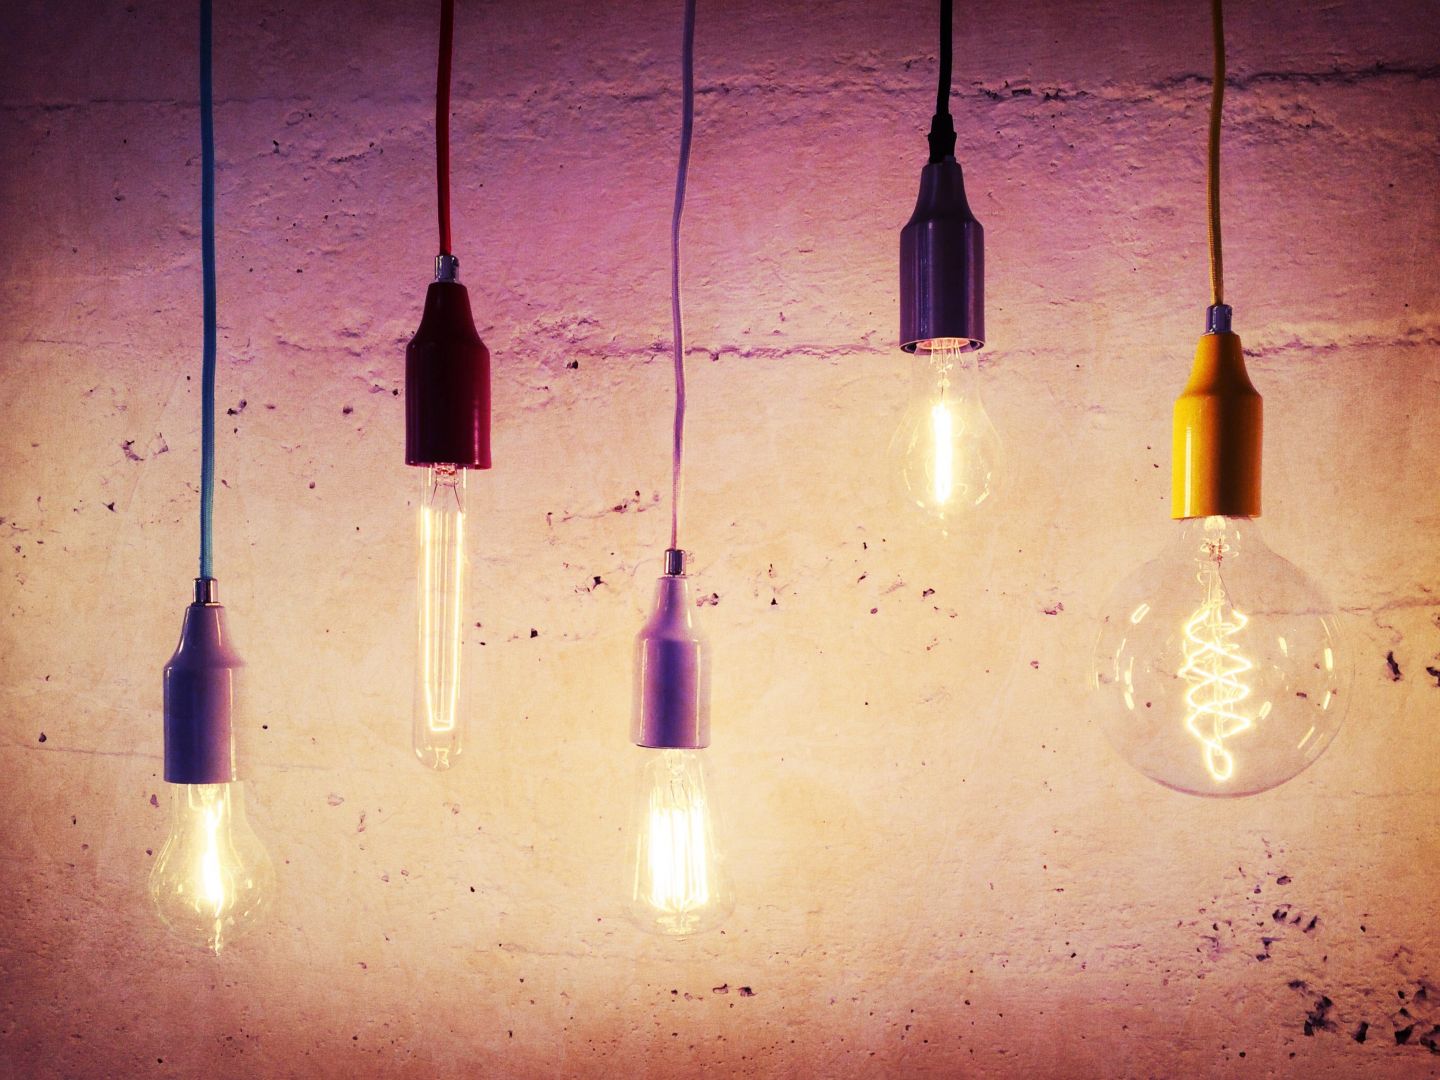 Poptávka na lED osvětlení do výrobní haly (Svítidla, osvětlení, žárovky) - Uherské Hradiště